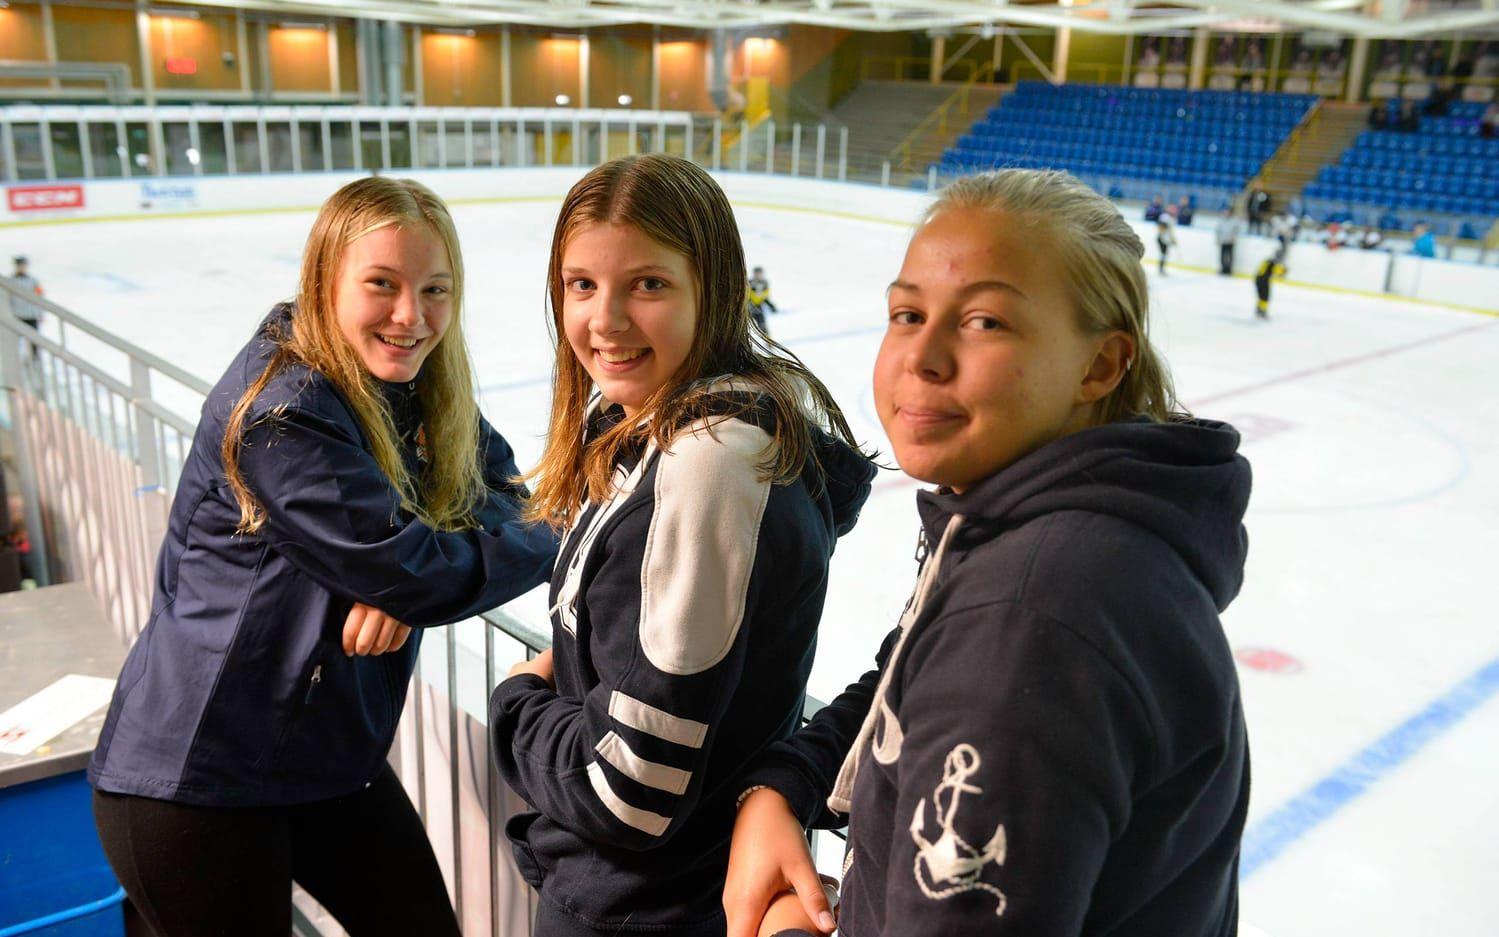 Hemmaspelare. Sanna Augustsson, Hanna Svensson och Malin Karlsson tillhör stommen i Trollhättans unga damhockeylag. Sanna och Hanna är bara 15 år, Malin är äldst i laget med sina 18 år.